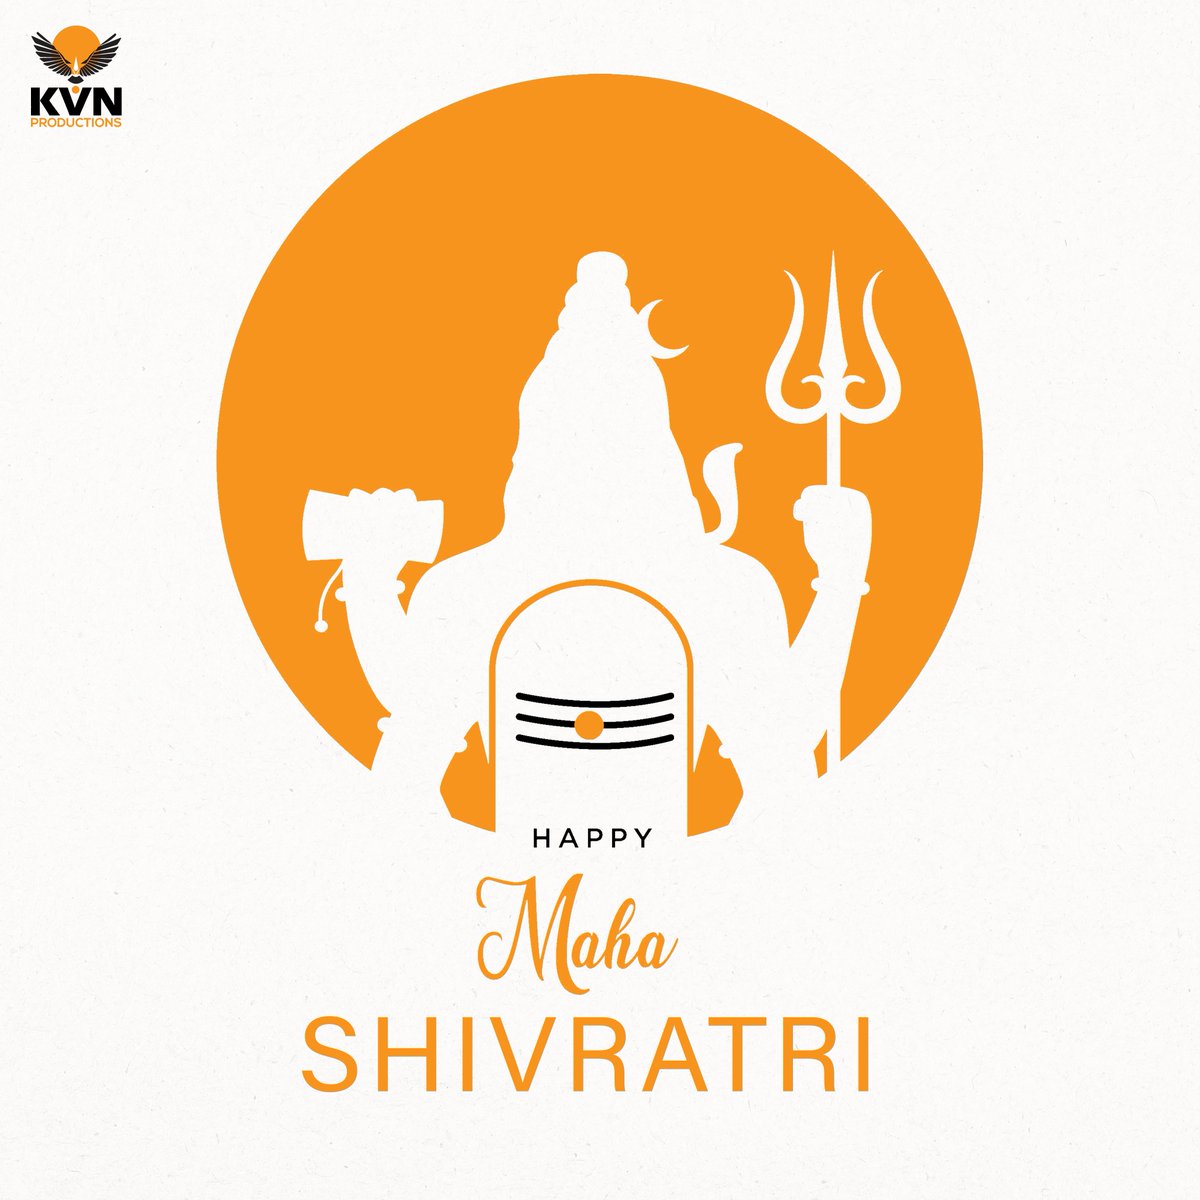 ನಾಡಿನ ಸಮಸ್ತ ಜನತೆಗೆ ಮಹಾ ಶಿವರಾತ್ರಿ ಹಬ್ಬದ ಹಾರ್ದಿಕ ಶುಭಾಶಯಗಳು.

Wishing everyone a happy & prosperous #MahaShivarathri ✨